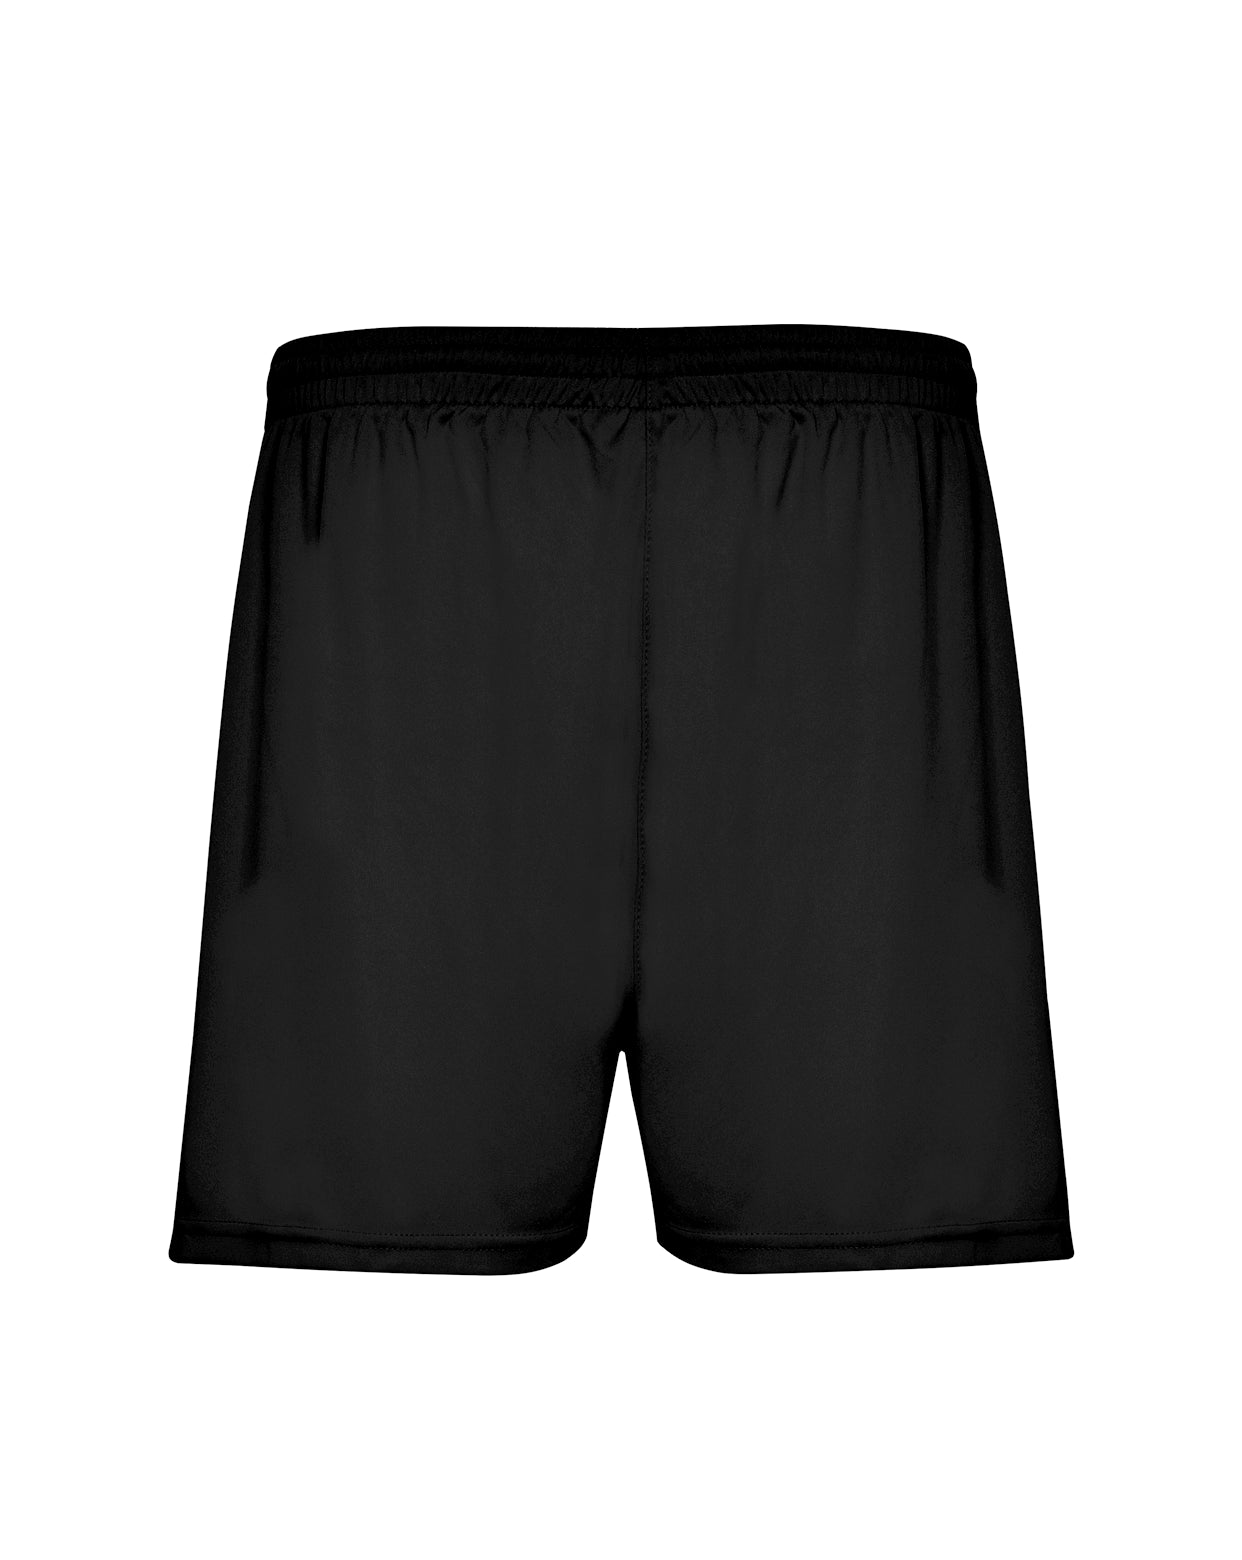 PE Sports Shorts - Black